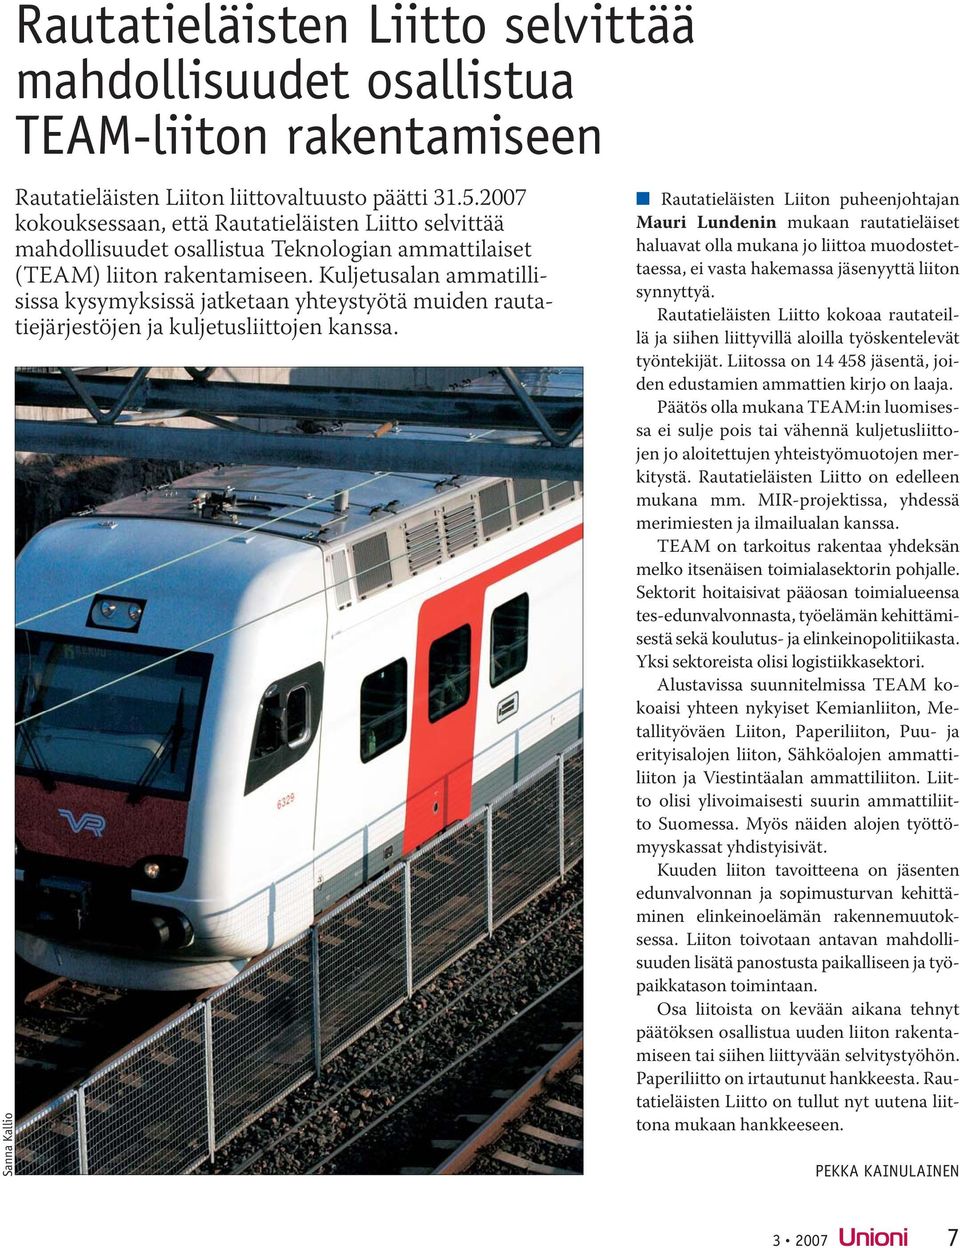 Kuljetusalan ammatillisissa kysymyksissä jatketaan yhteystyötä muiden rautatiejärjestöjen ja kuljetusliittojen kanssa.